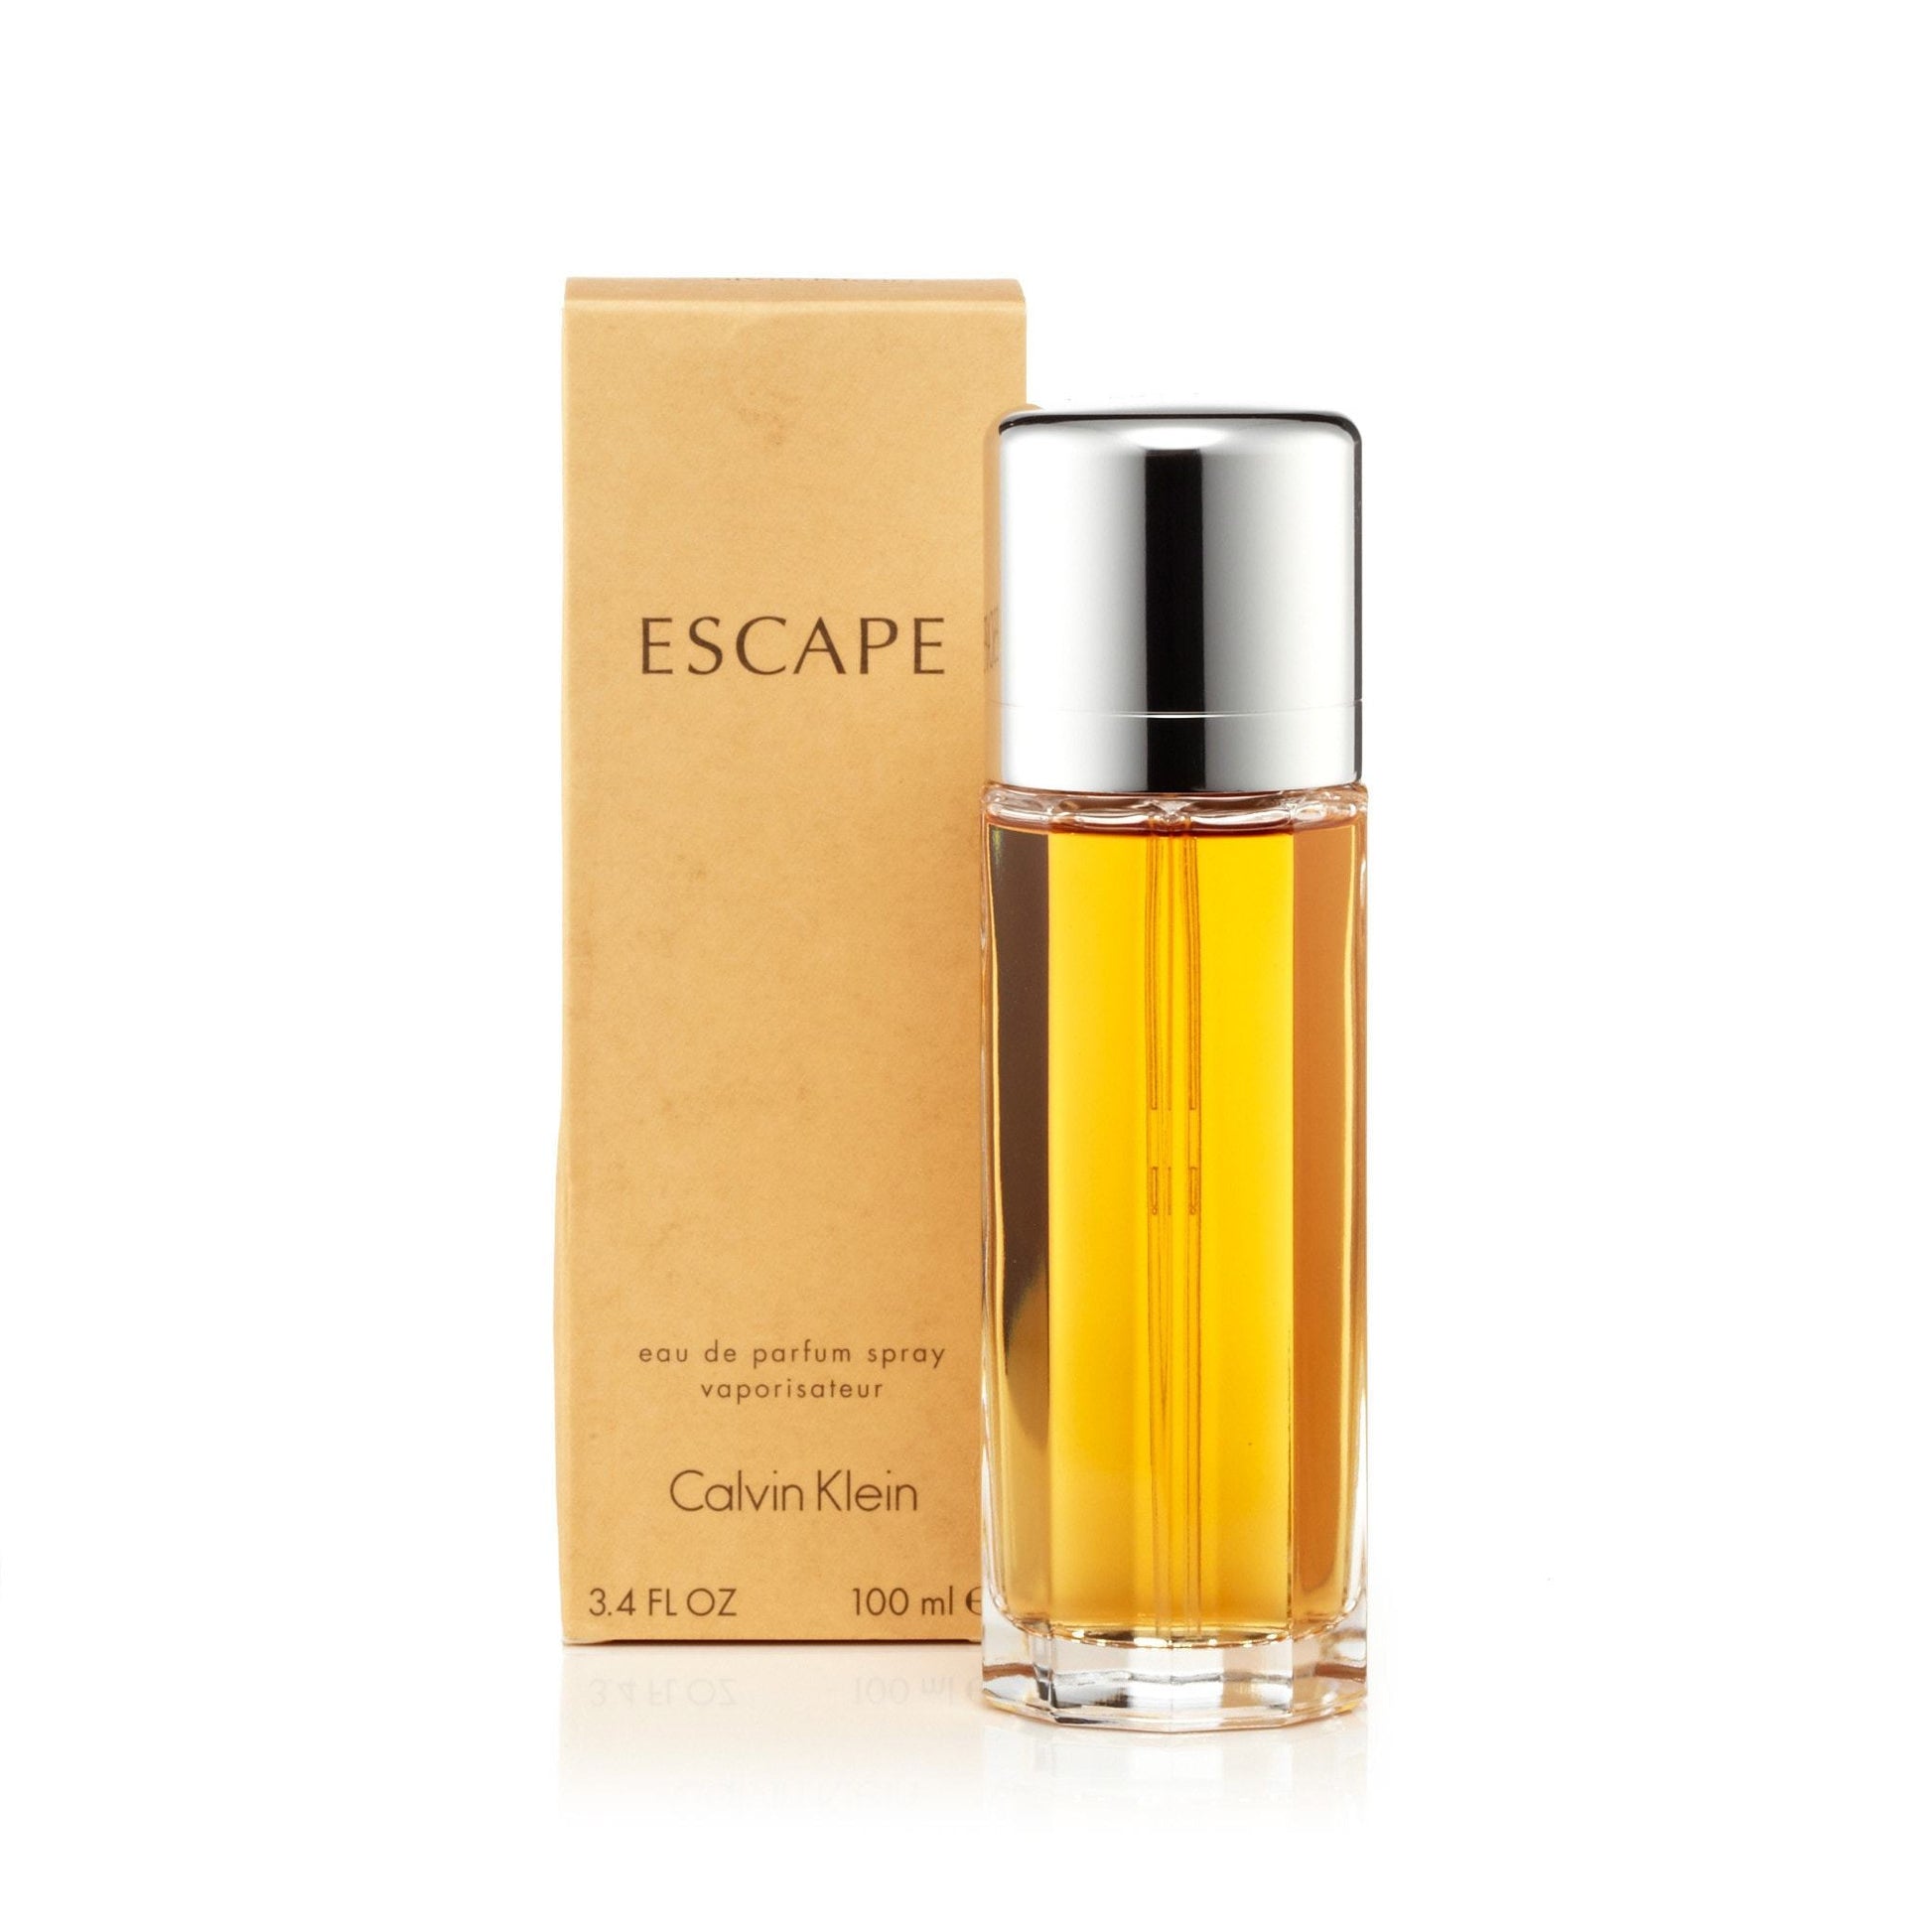 Escape Eau de Parfum Spray for Women by Calvin Klein, Product image 4